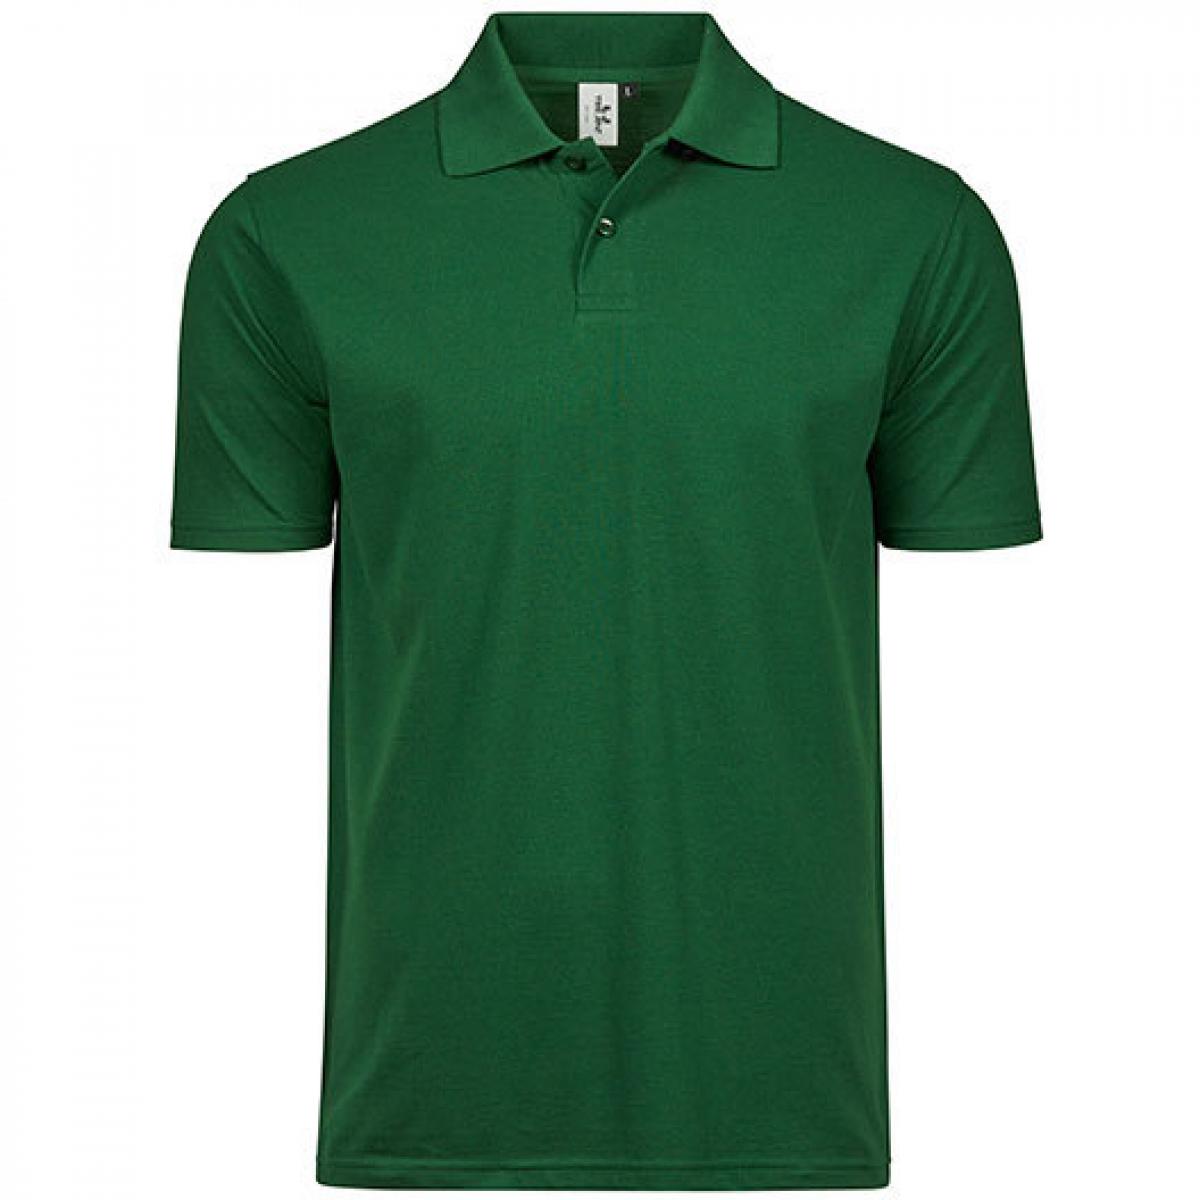 Hersteller: Tee Jays Herstellernummer: 1200 Artikelbezeichnung: Power Polo - Herren Poloshirt - Waschbar bis 60 °C Farbe: Forest Green